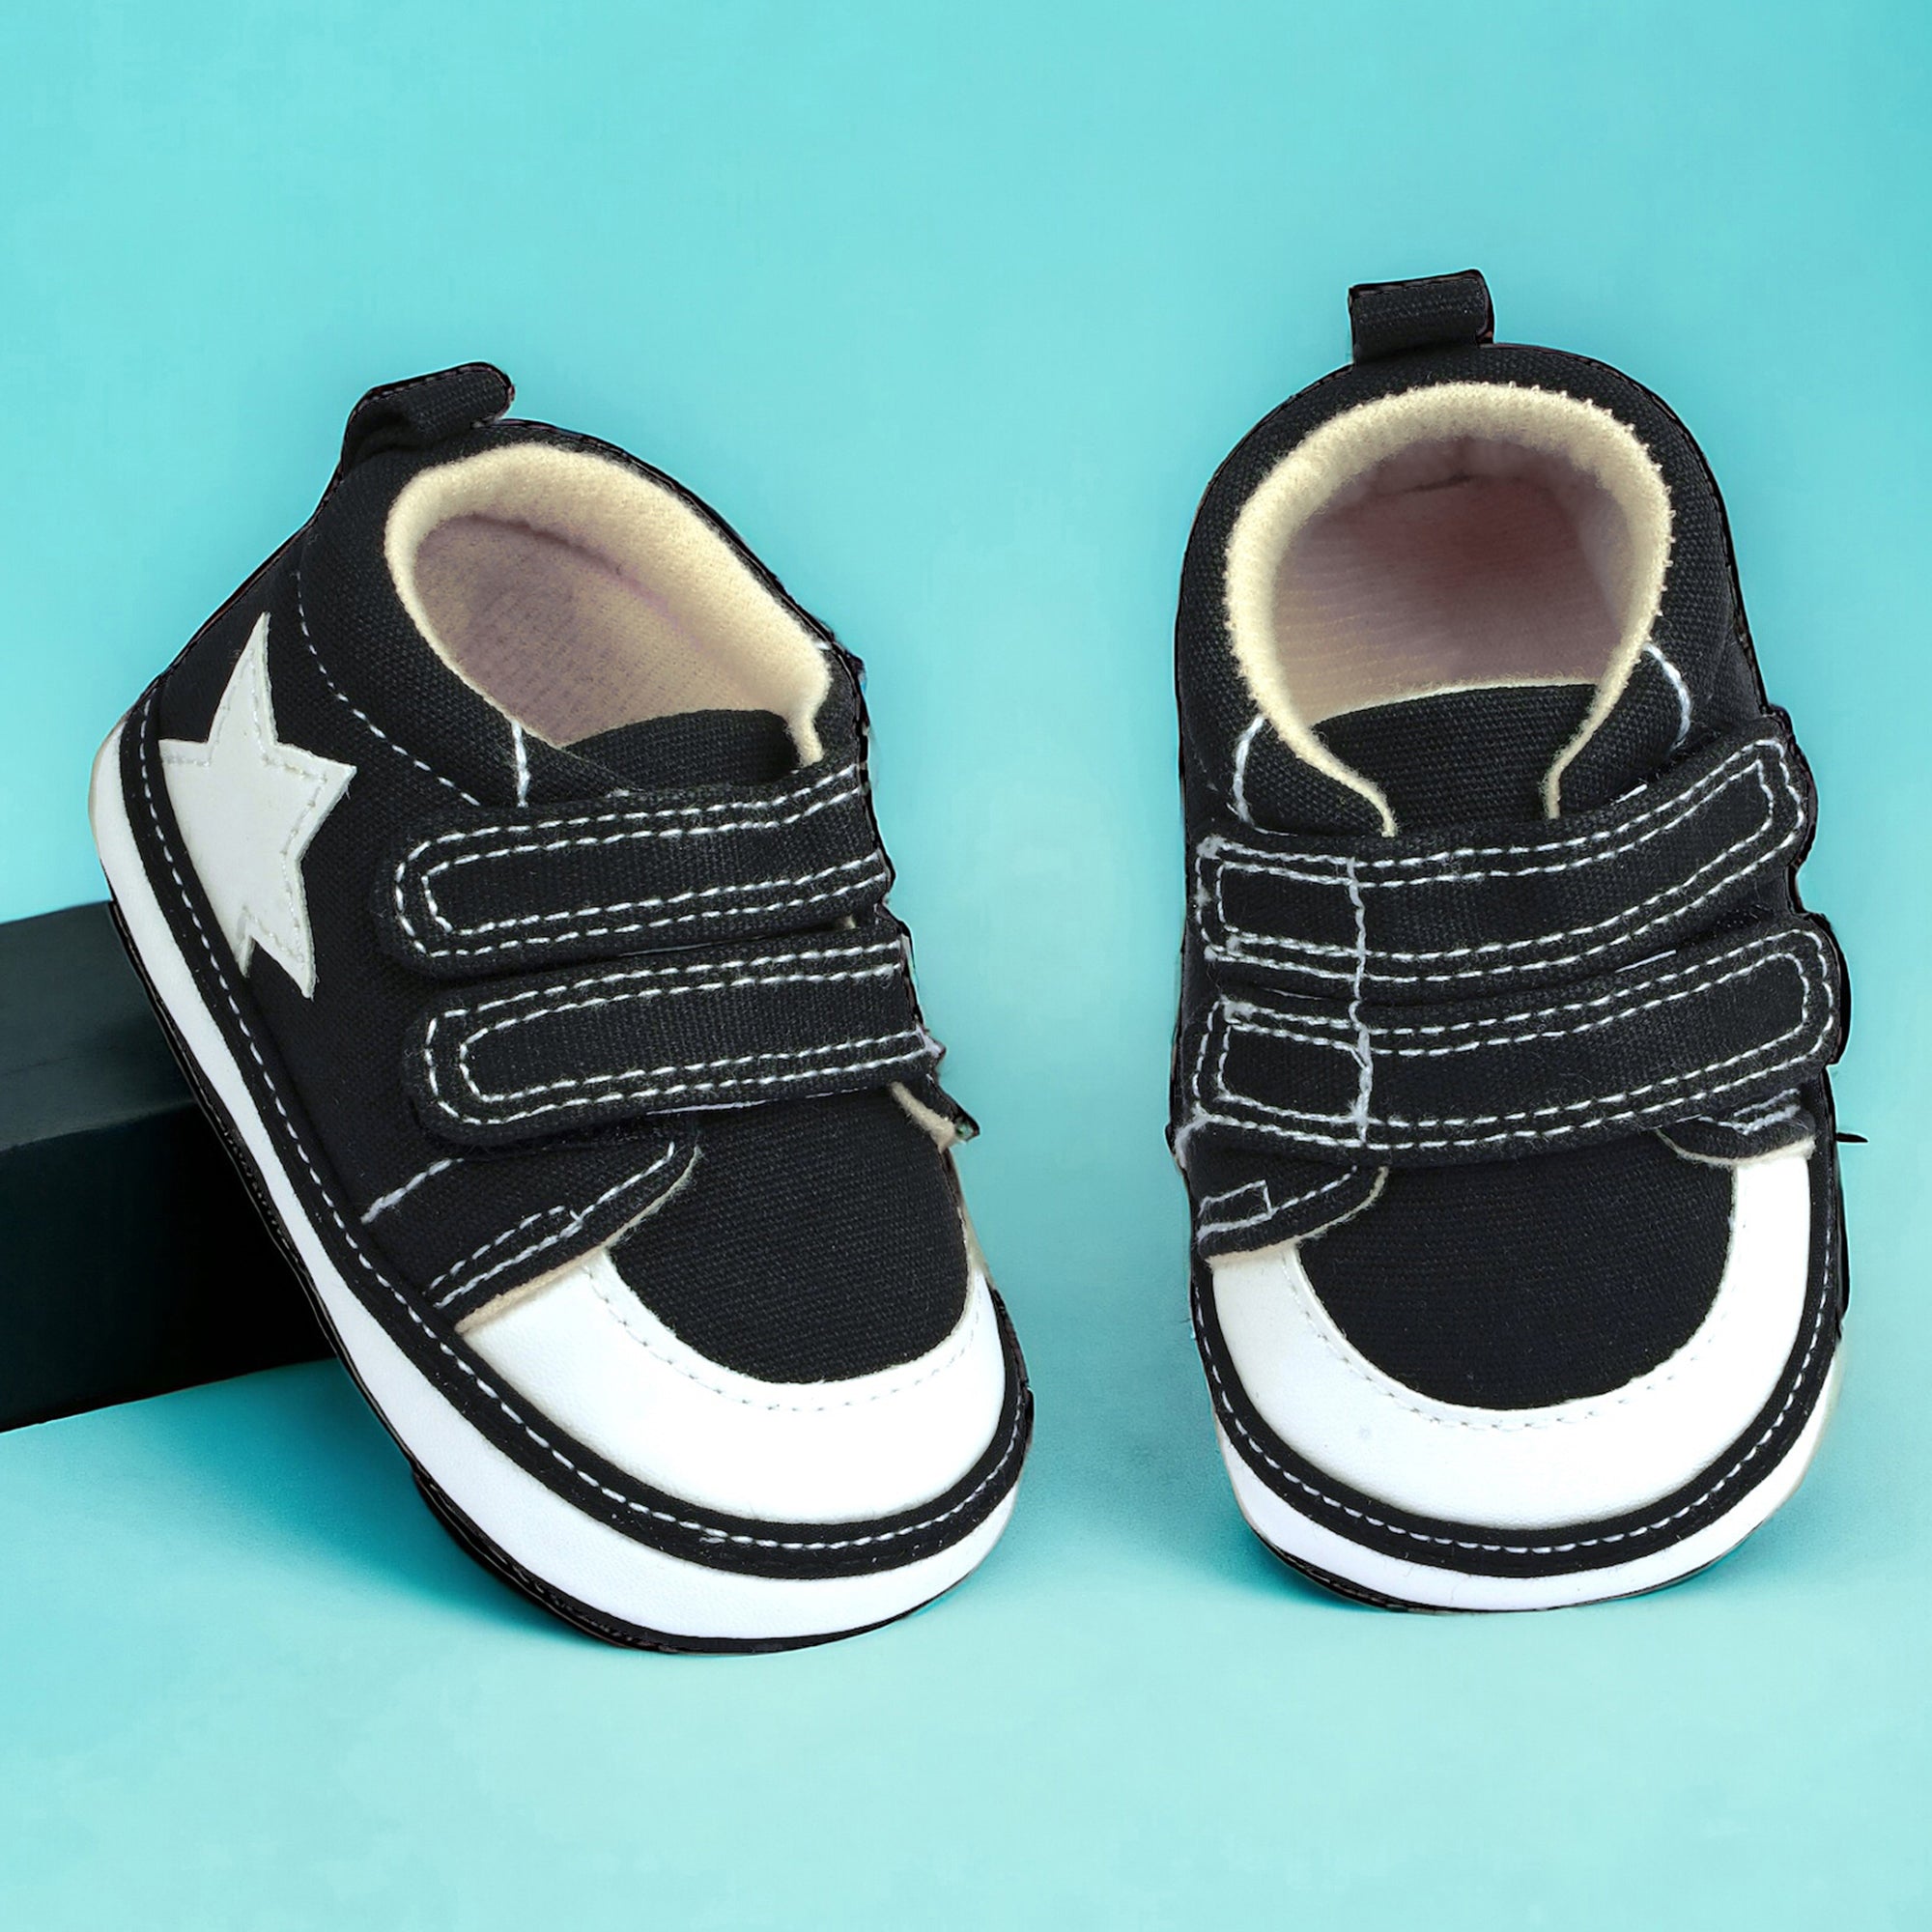 Baby Moo Casual Hook Loop Anti-Skid Classic Canvas Sneakers - Black